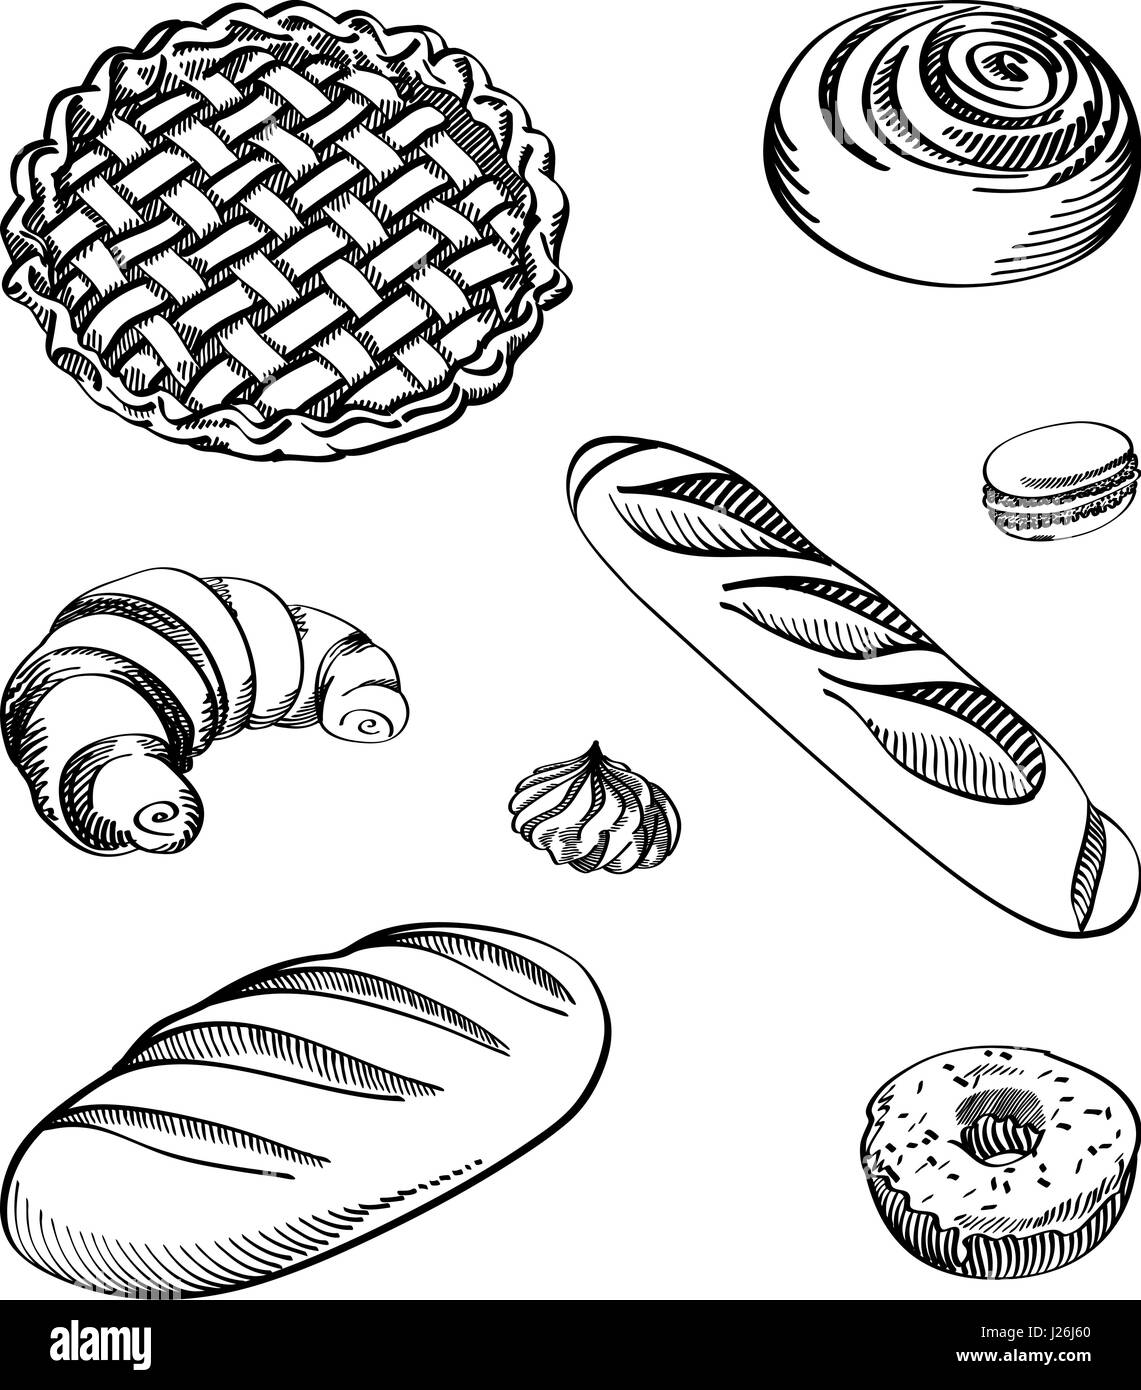 Satz von Vektor-Illustrationen - verschiedene Arten von Keksen und Kuchen, isoliert. Handgezeichnete detaillierte Zeichnung im Vintage-Stil. Stock Vektor